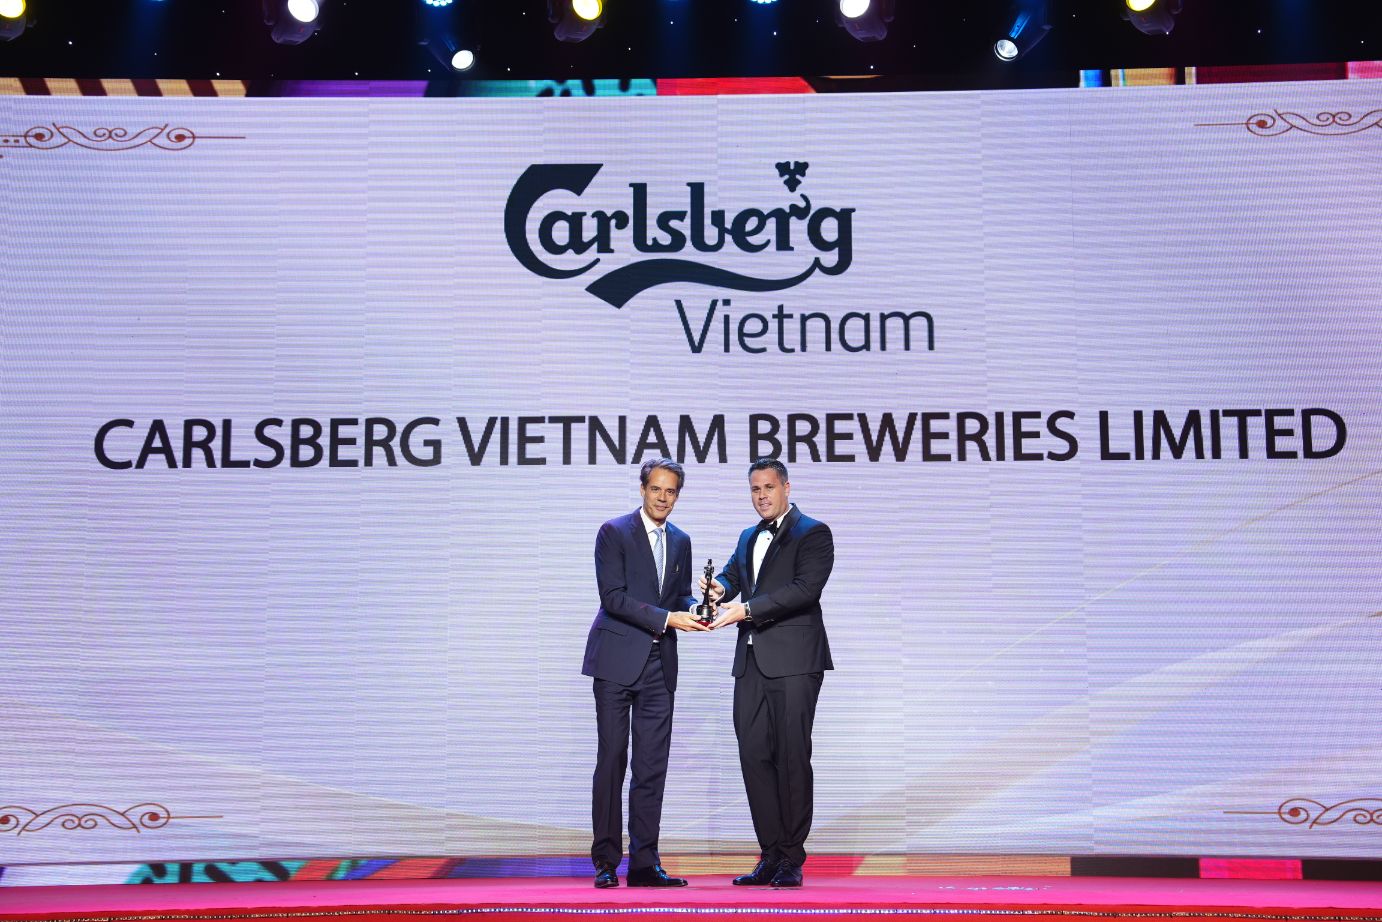 Carlsberg Việt Nam 1 Carlsberg Việt Nam – Doanh nghiệp lấy con người làm trọng tâm để phát triển